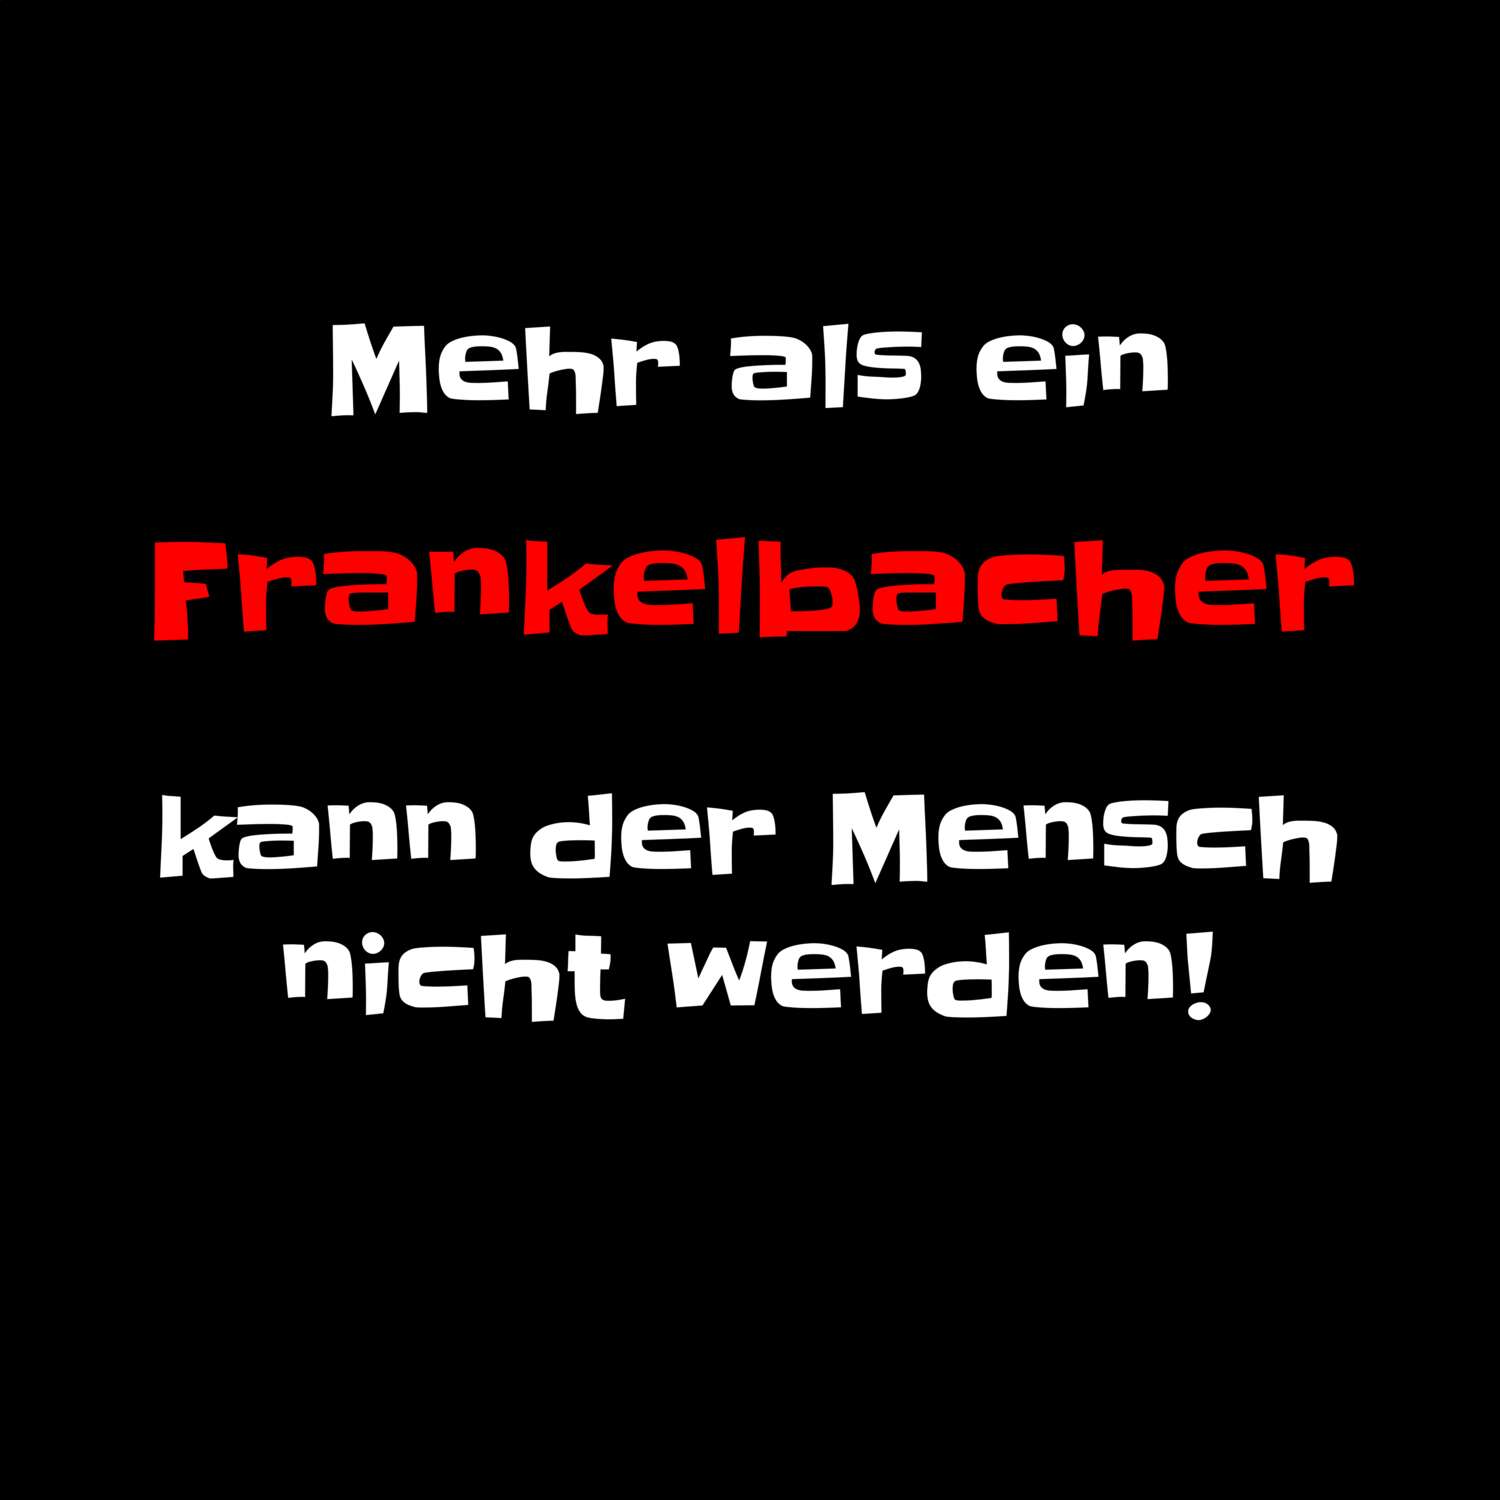 Frankelbach T-Shirt »Mehr als ein«